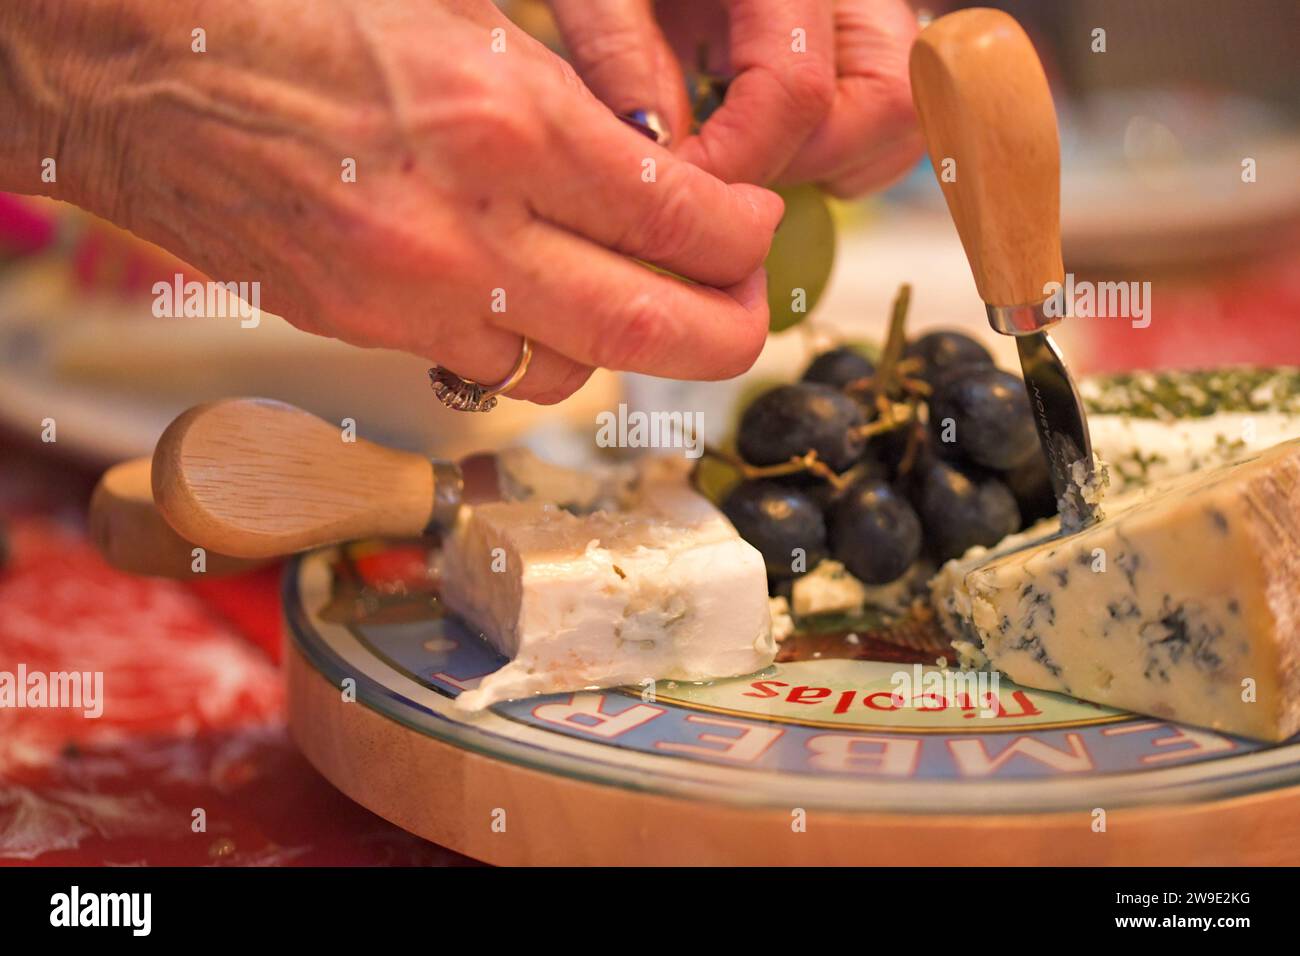 Una donna che prende l'uva dal centro di un piatto di formaggio, con un cuneo stilton con un coltello da formaggio e una fetta di brie cremosa Foto Stock